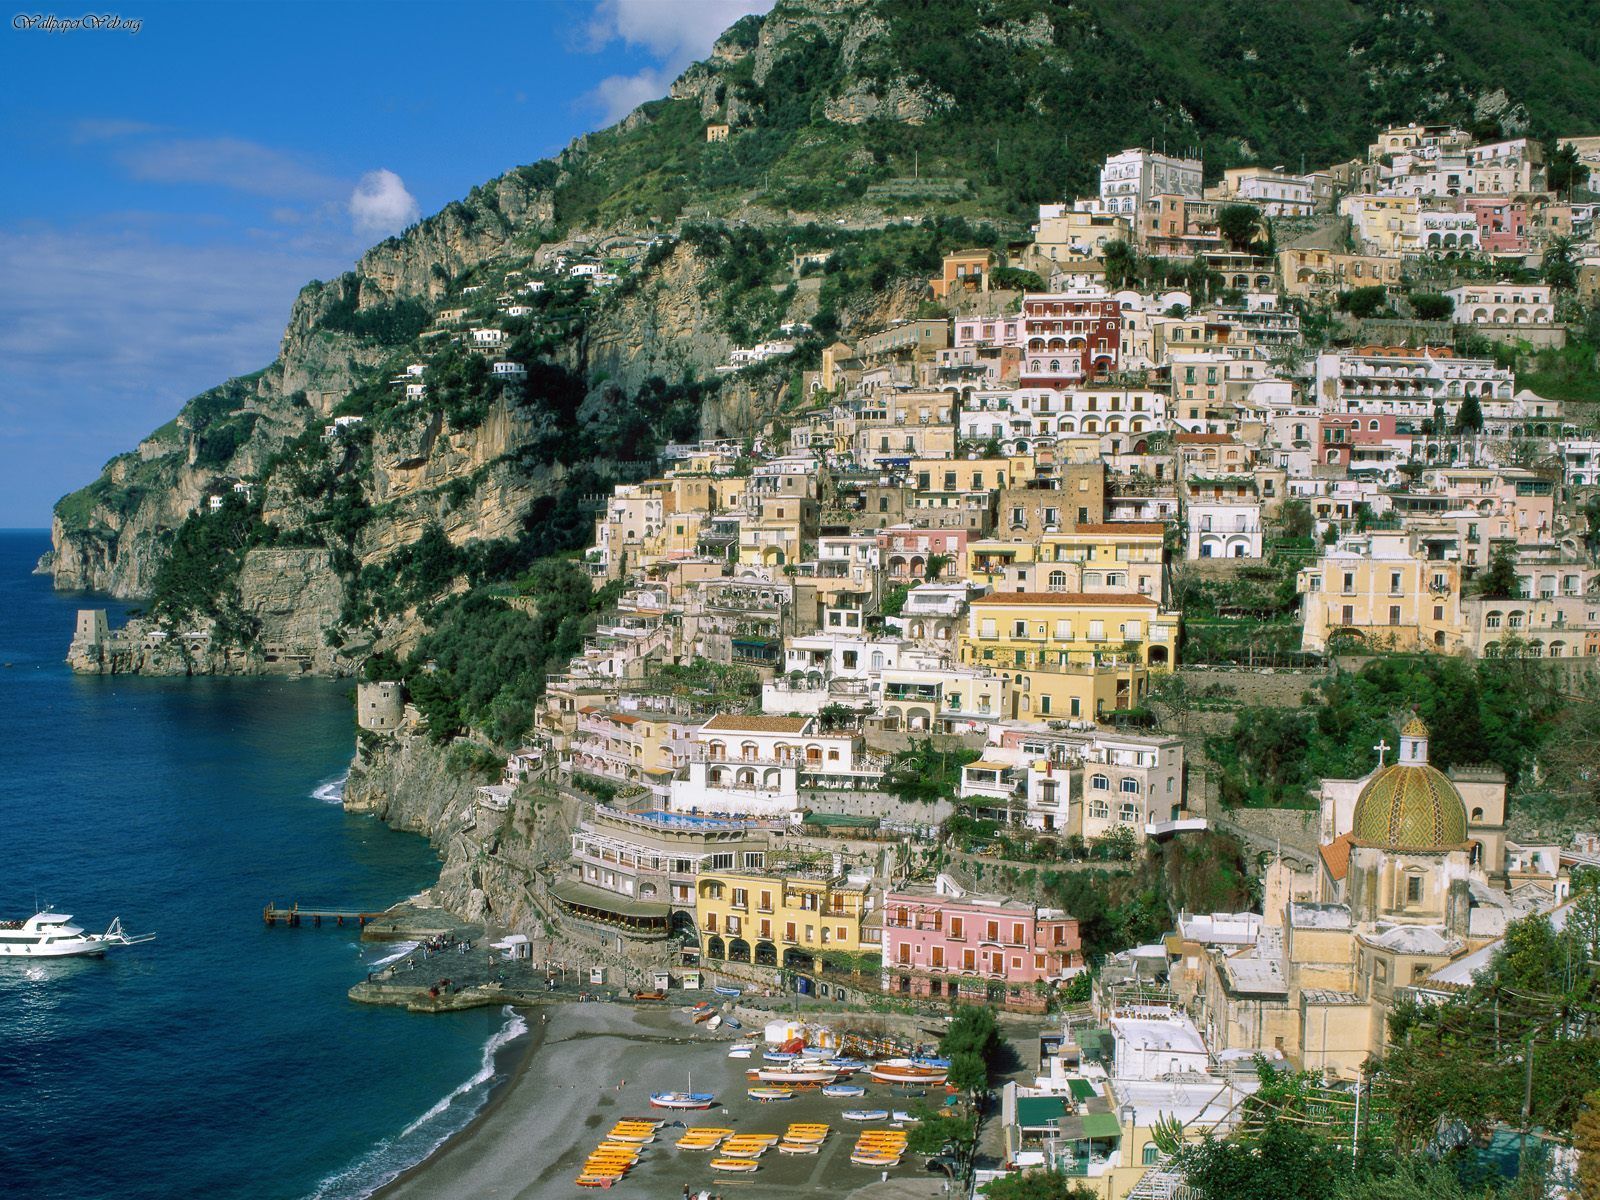 Tags Italy Pics The Amalfi Coast Or Costiera Amalfitana In Italian